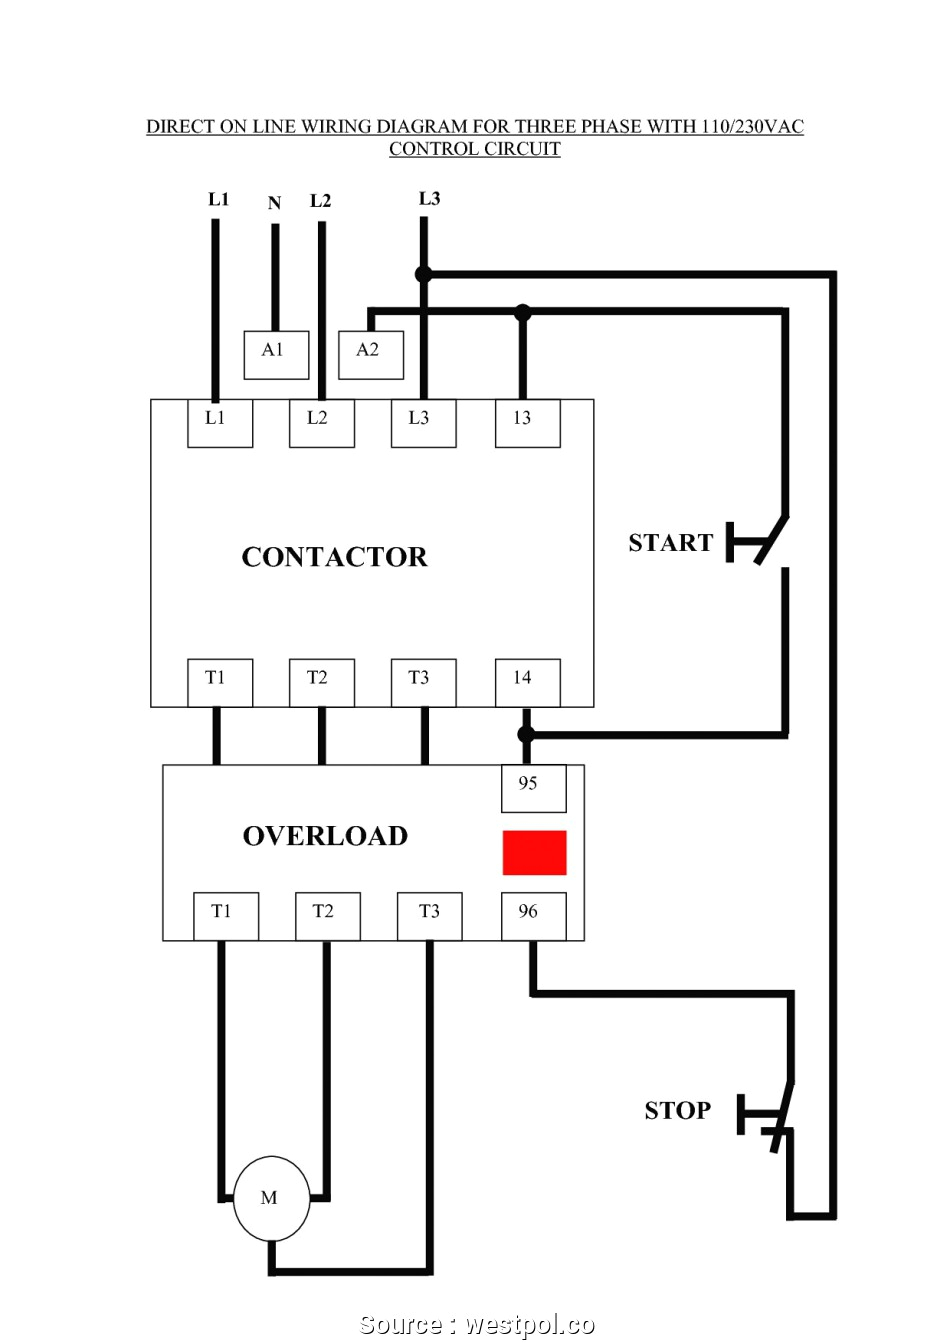 3 phase motor circuit diagram pdf wiring diagram schematic 3 phase motor control circuit diagram pdf 3 phase motor circuit diagram pdf